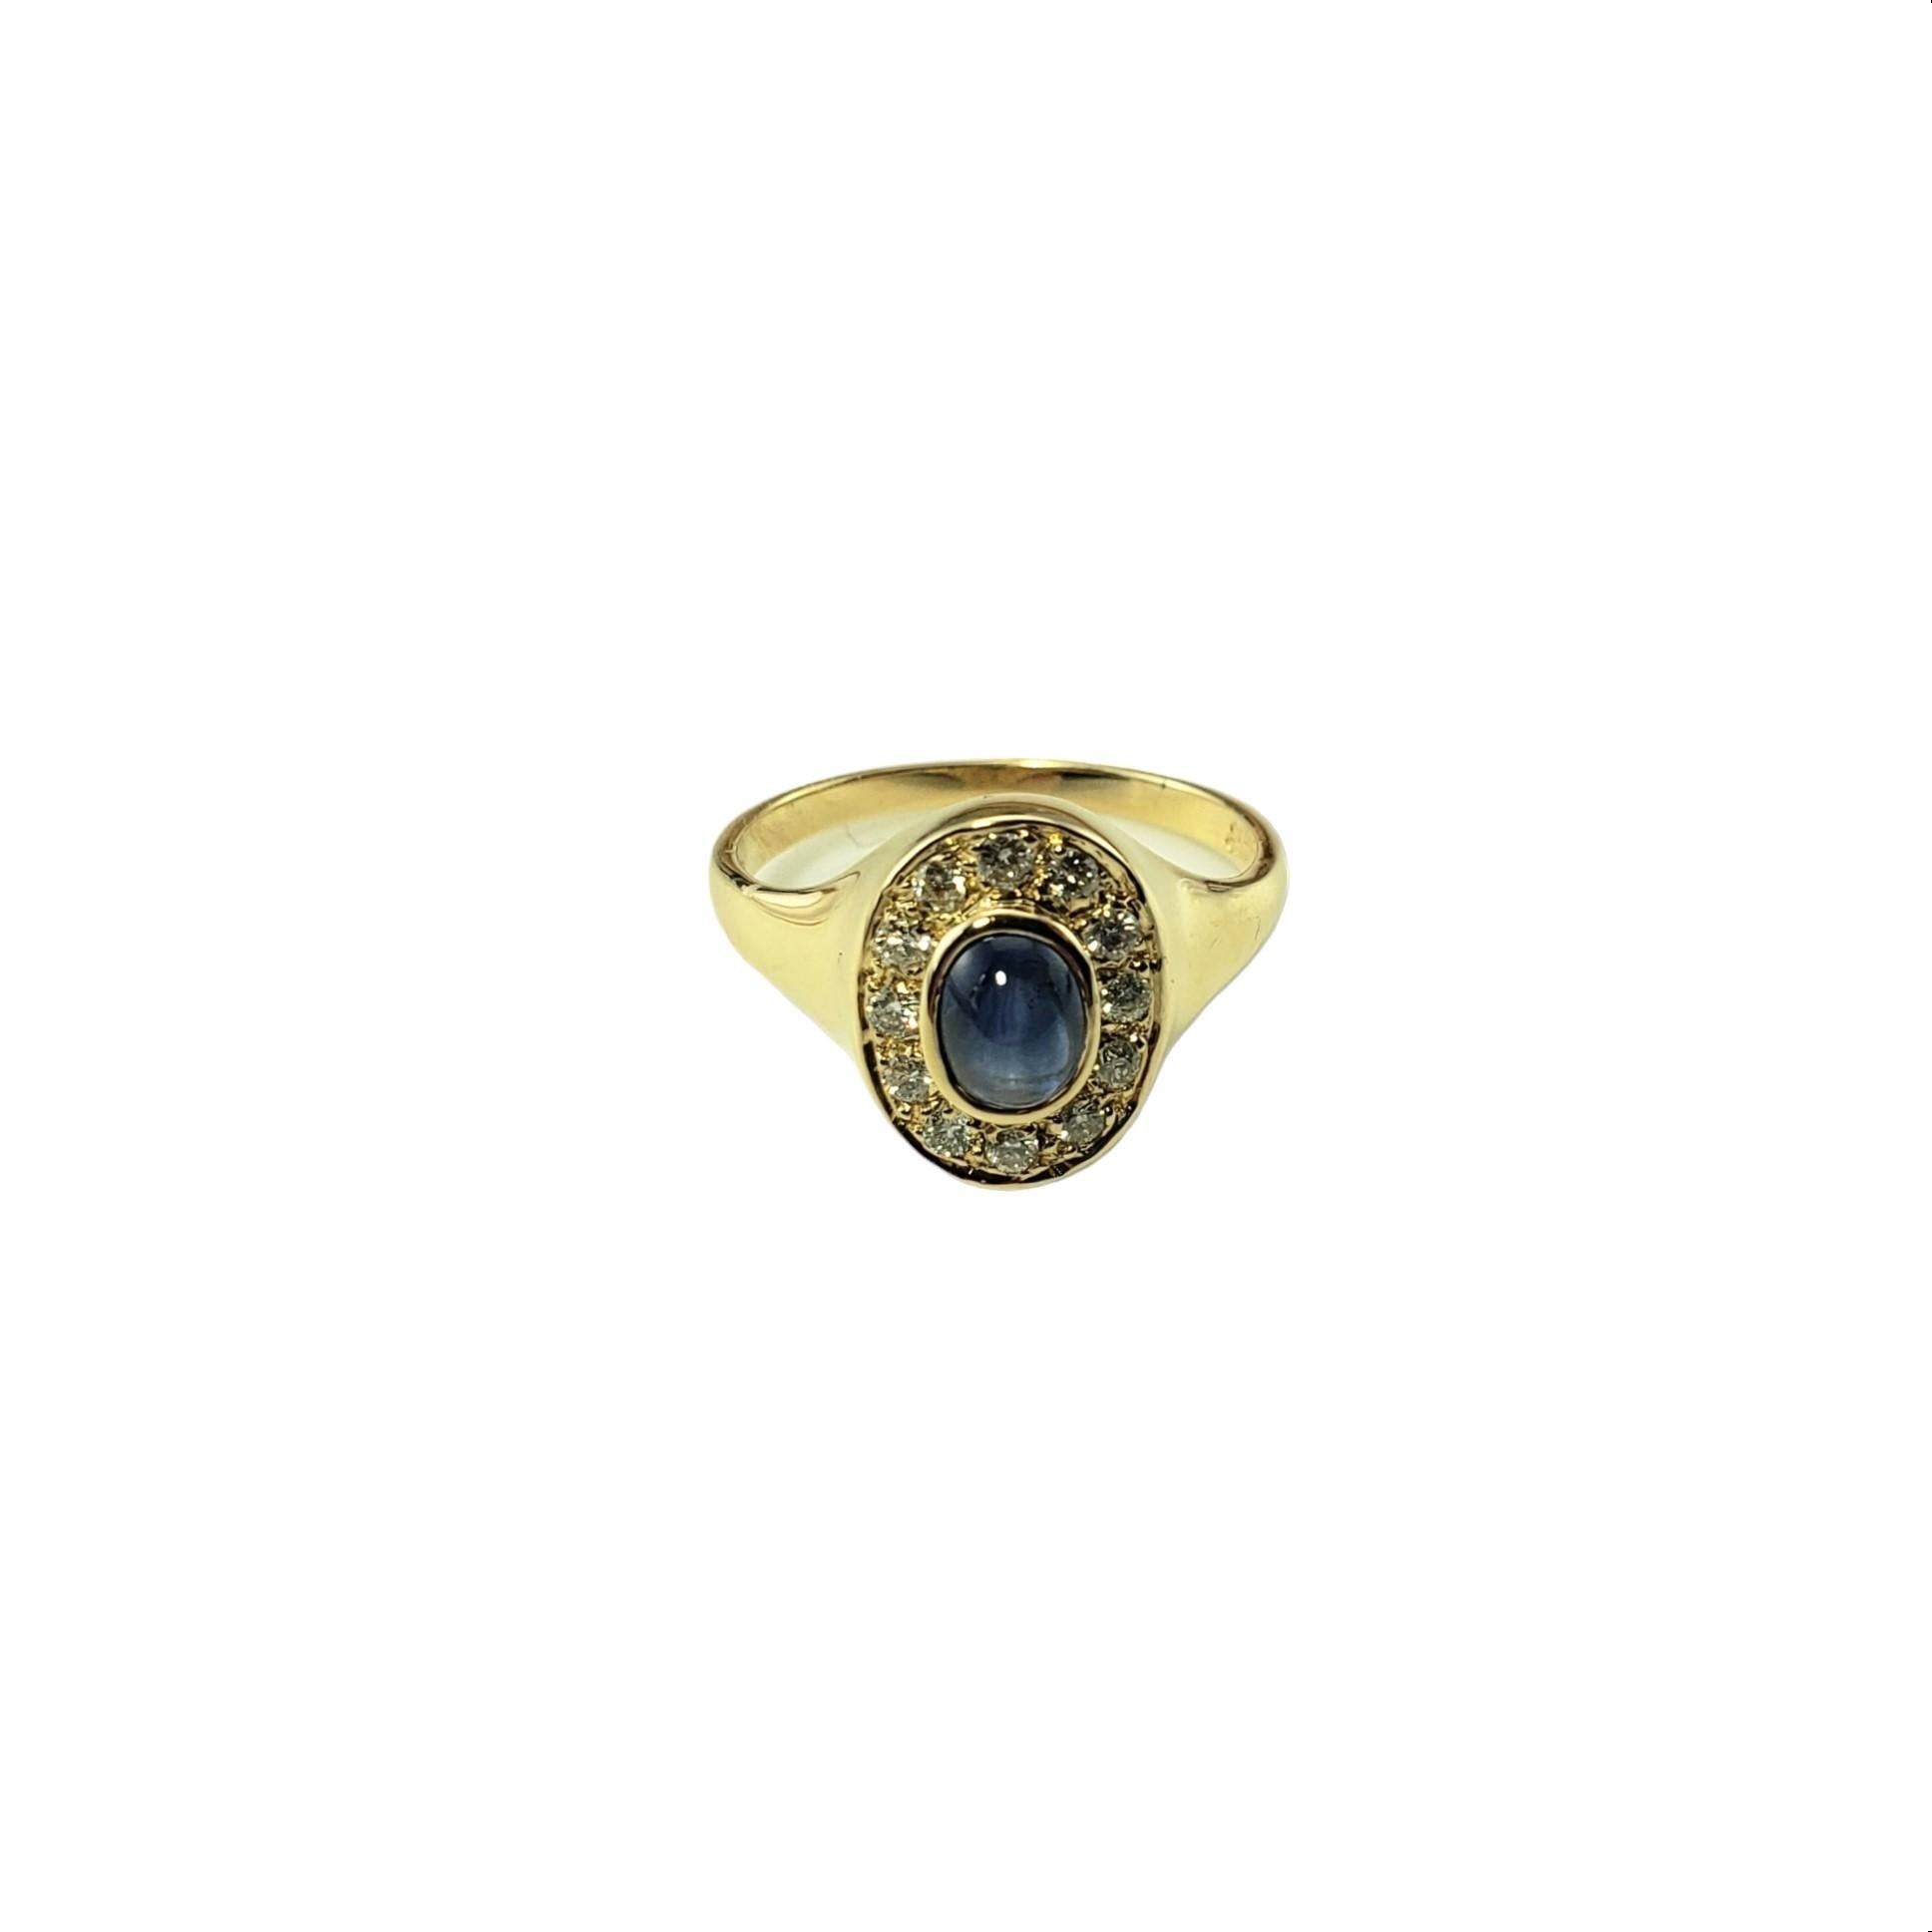 Vintage 14 Karat Gelbgold Saphir und Diamant Ring Größe 6,25 JAGi zertifiziert-

Dieser elegante Ring ist mit einem ovalen blauen Cabochon-Saphir und 12 runden Diamanten im Brillantschliff in klassischem 14-karätigem Gelbgold gefasst.  Breite: 12